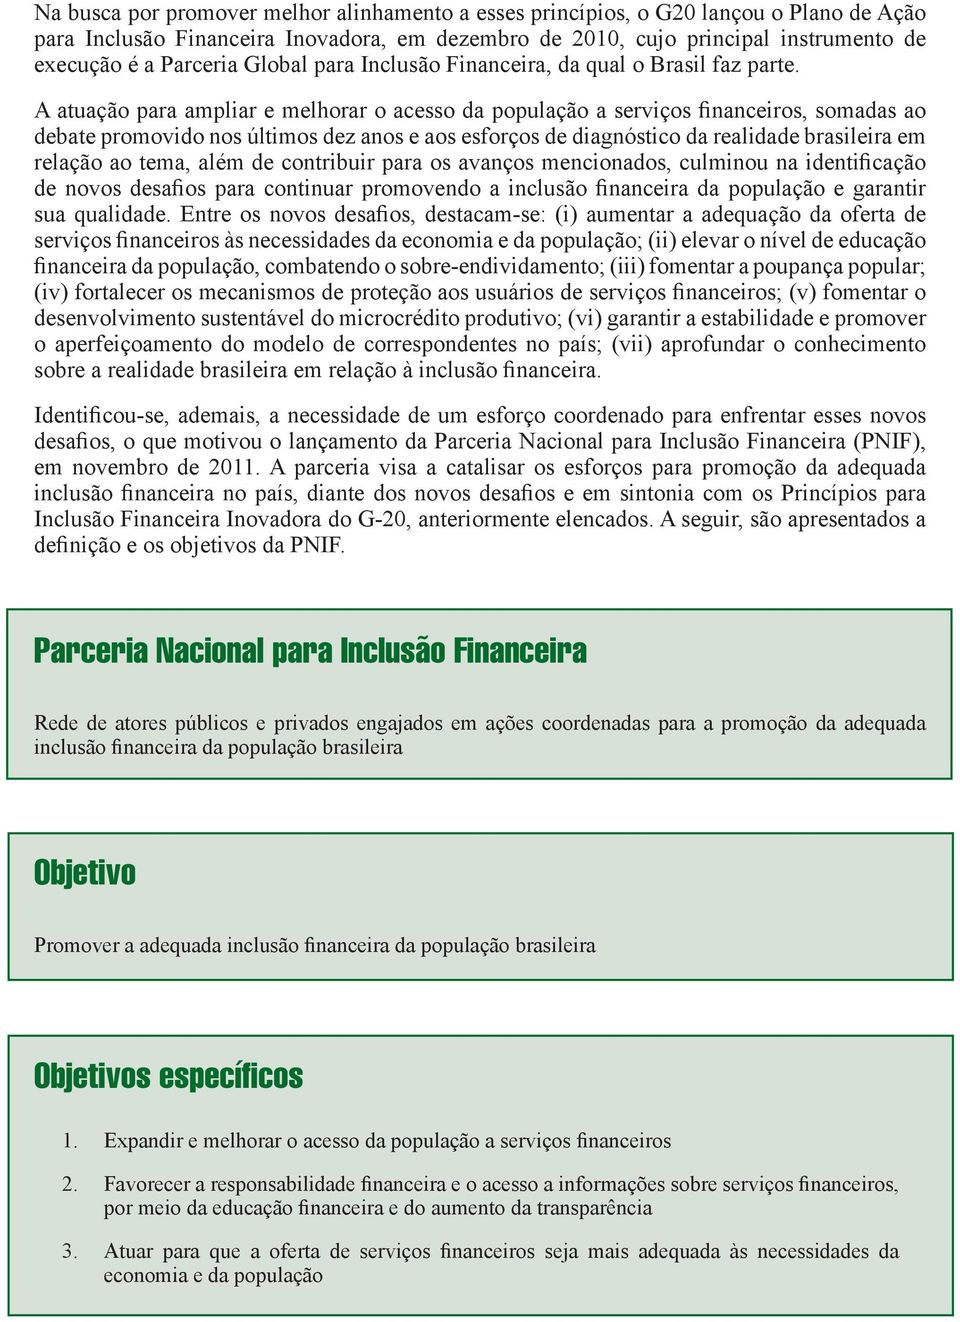 A atuação para ampliar e melhorar o acesso da população a serviços financeiros, somadas ao debate promovido nos últimos dez anos e aos esforços de diagnóstico da realidade brasileira em relação ao